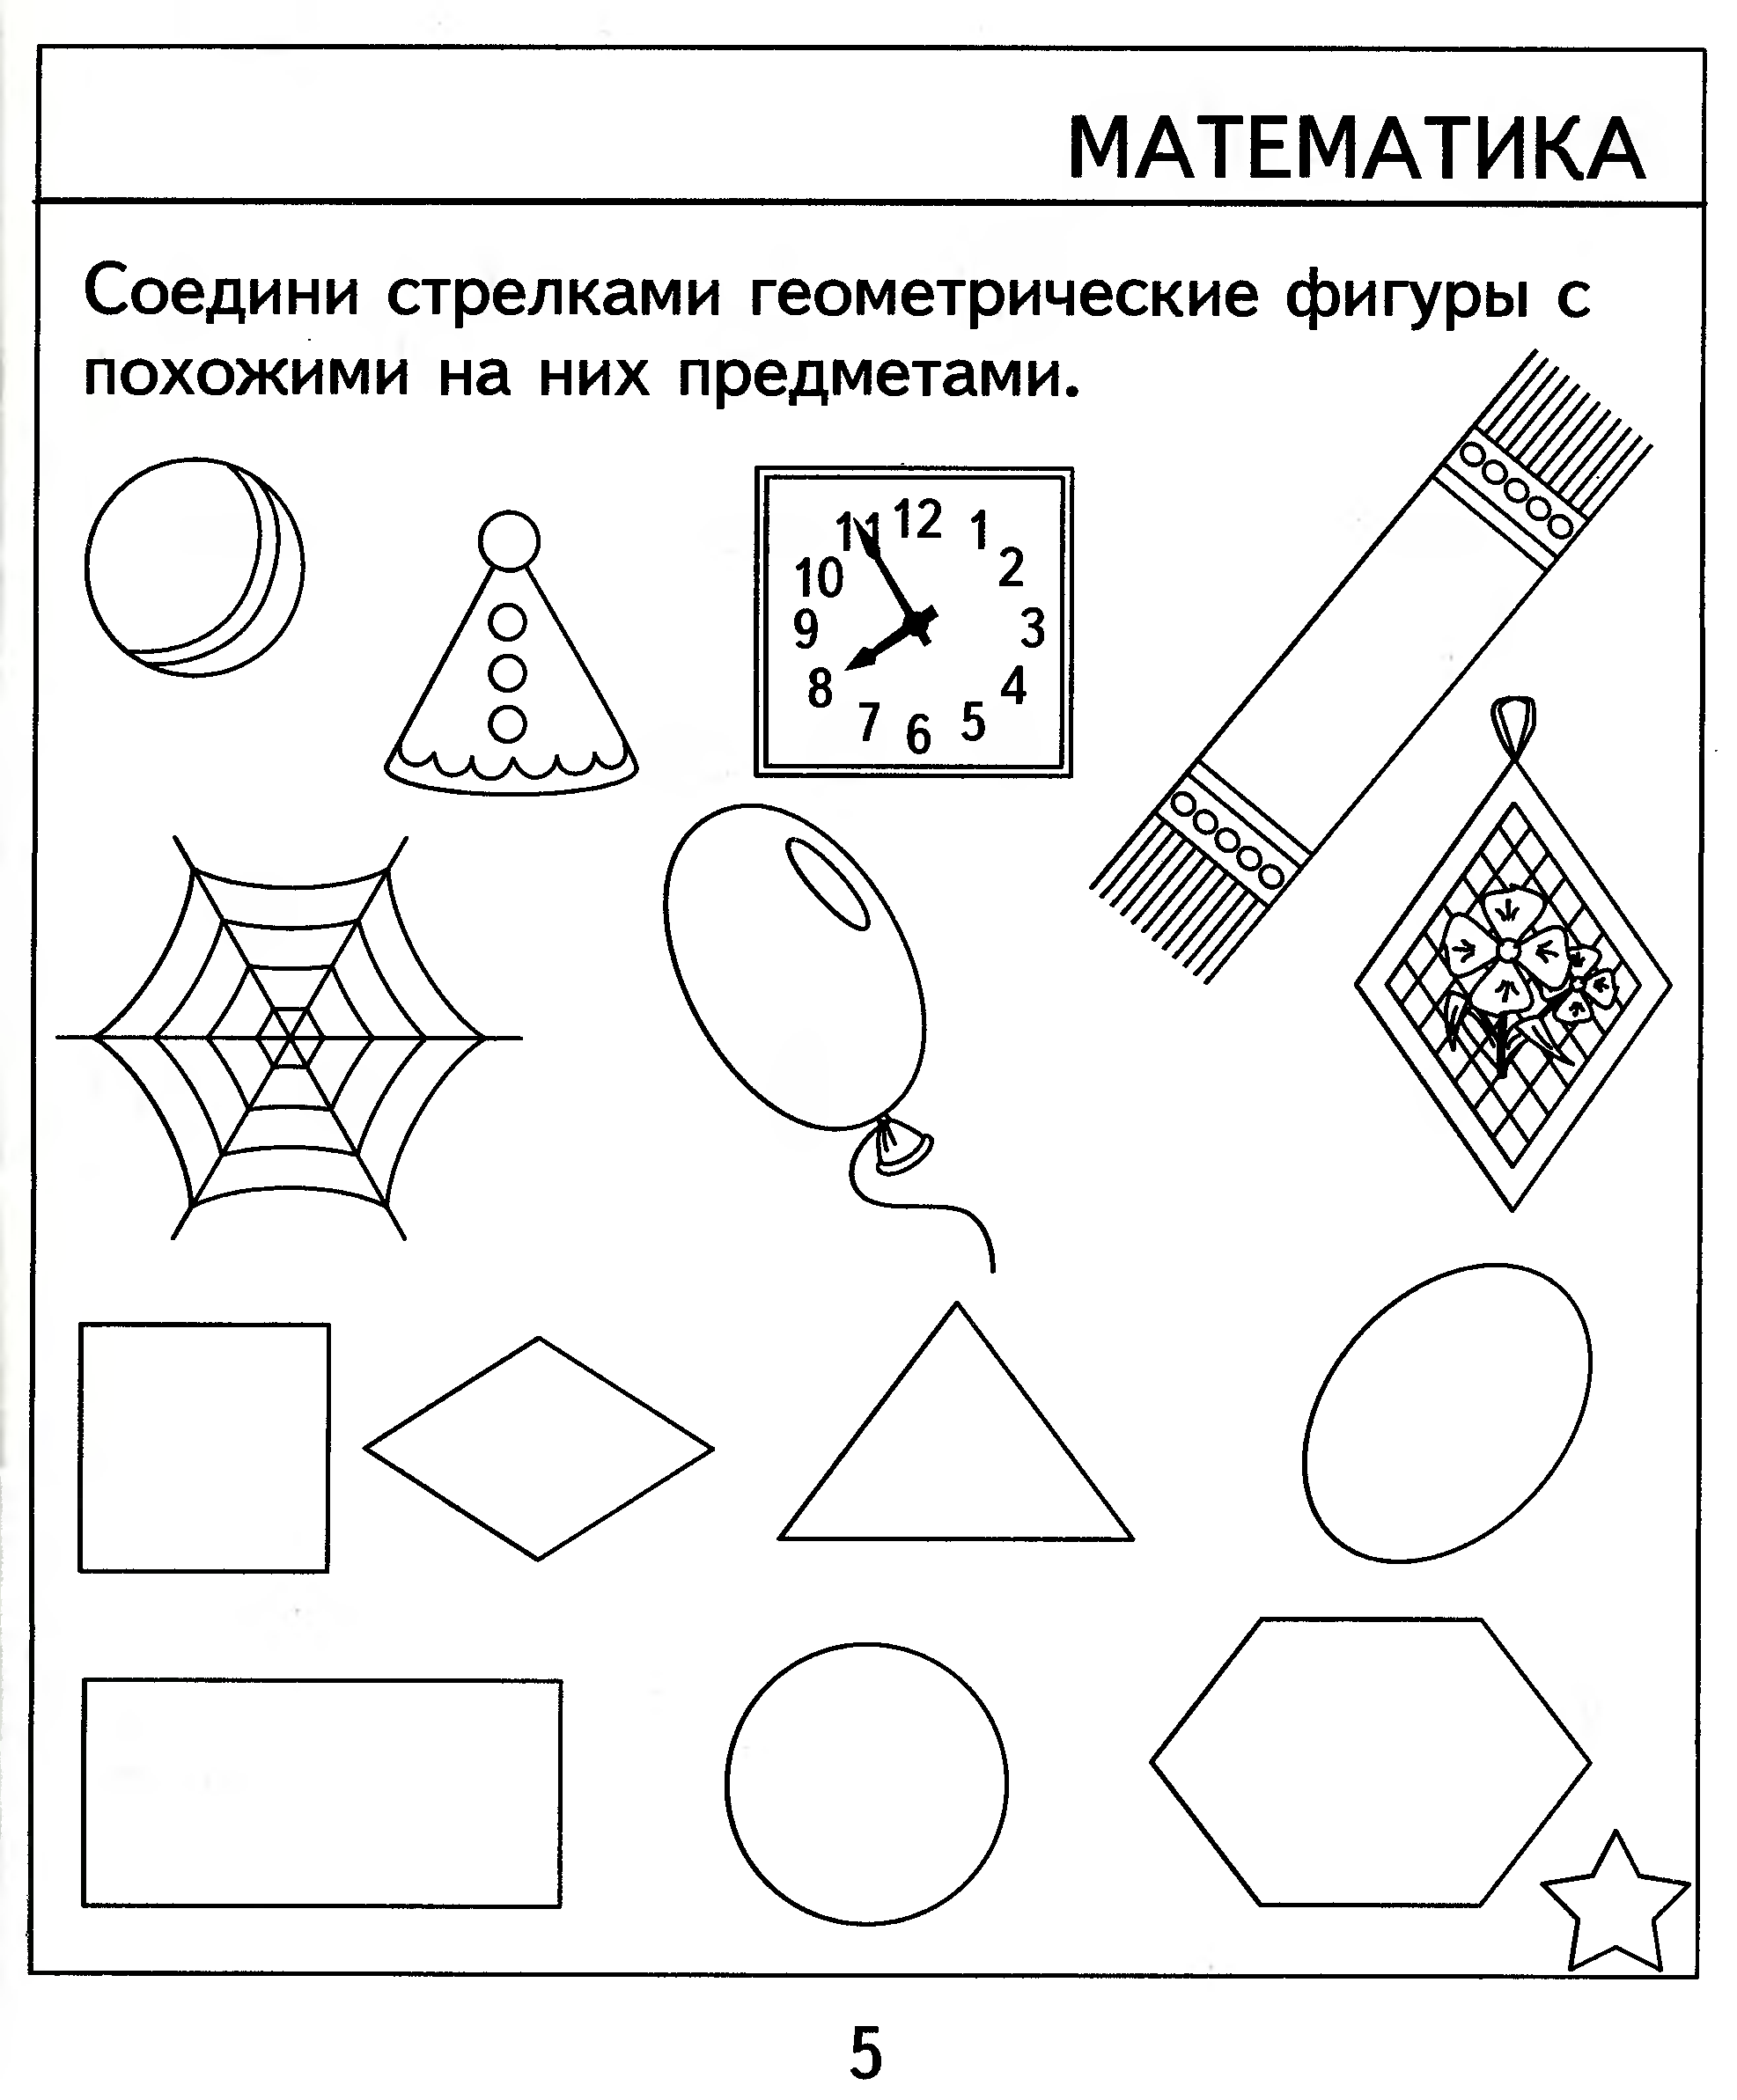 Задания с геометрическими фигурами для детей 4-5 лет